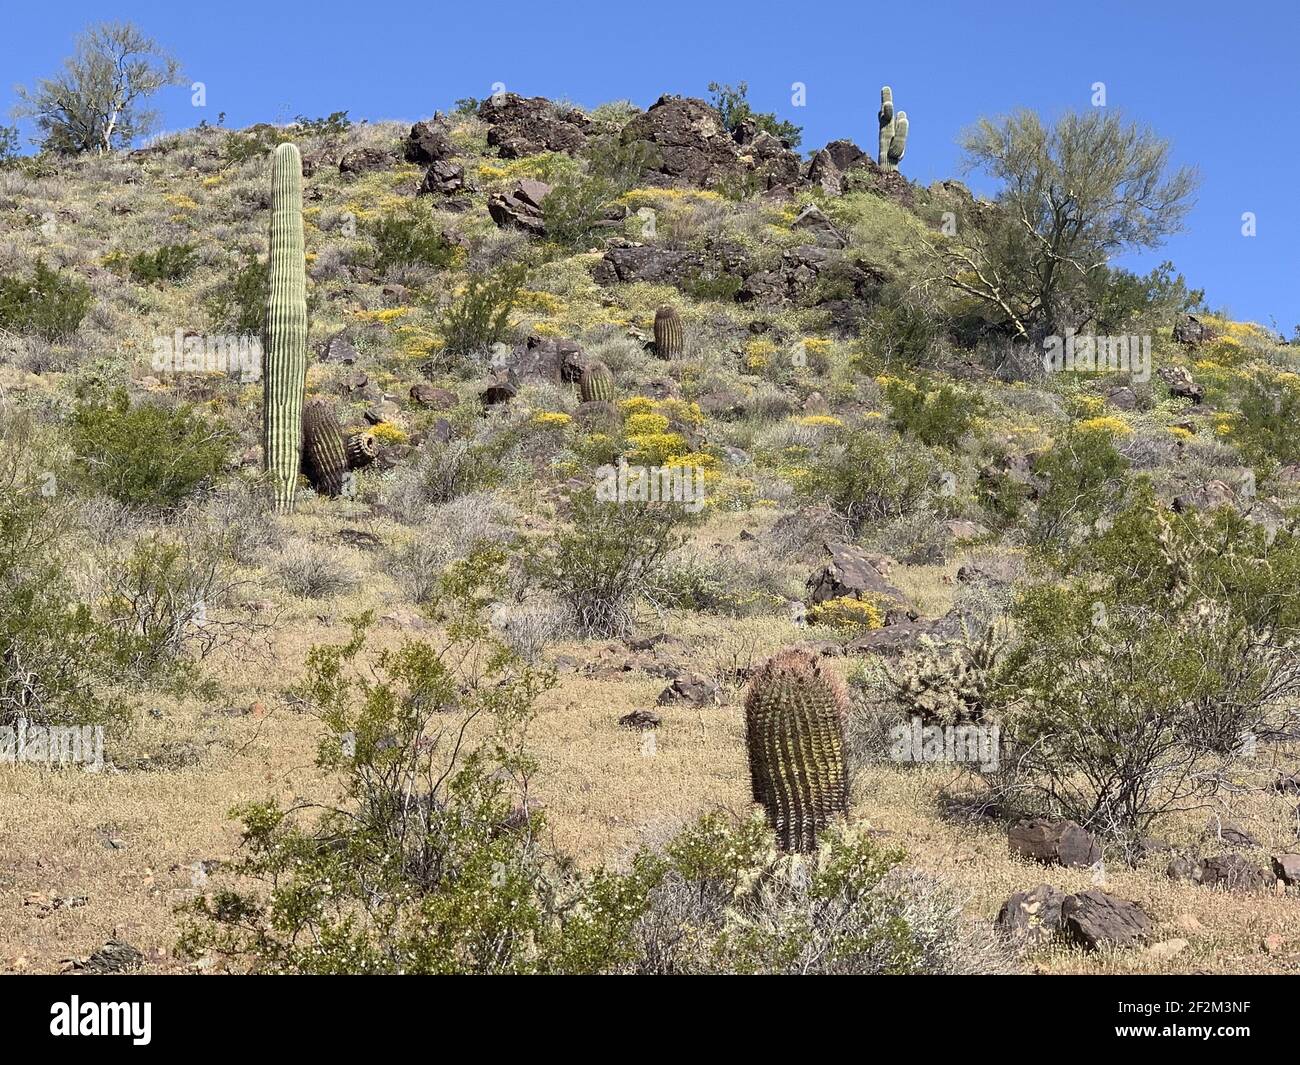 Un paysage d'un désert avec diverses plantes de cactus Banque D'Images